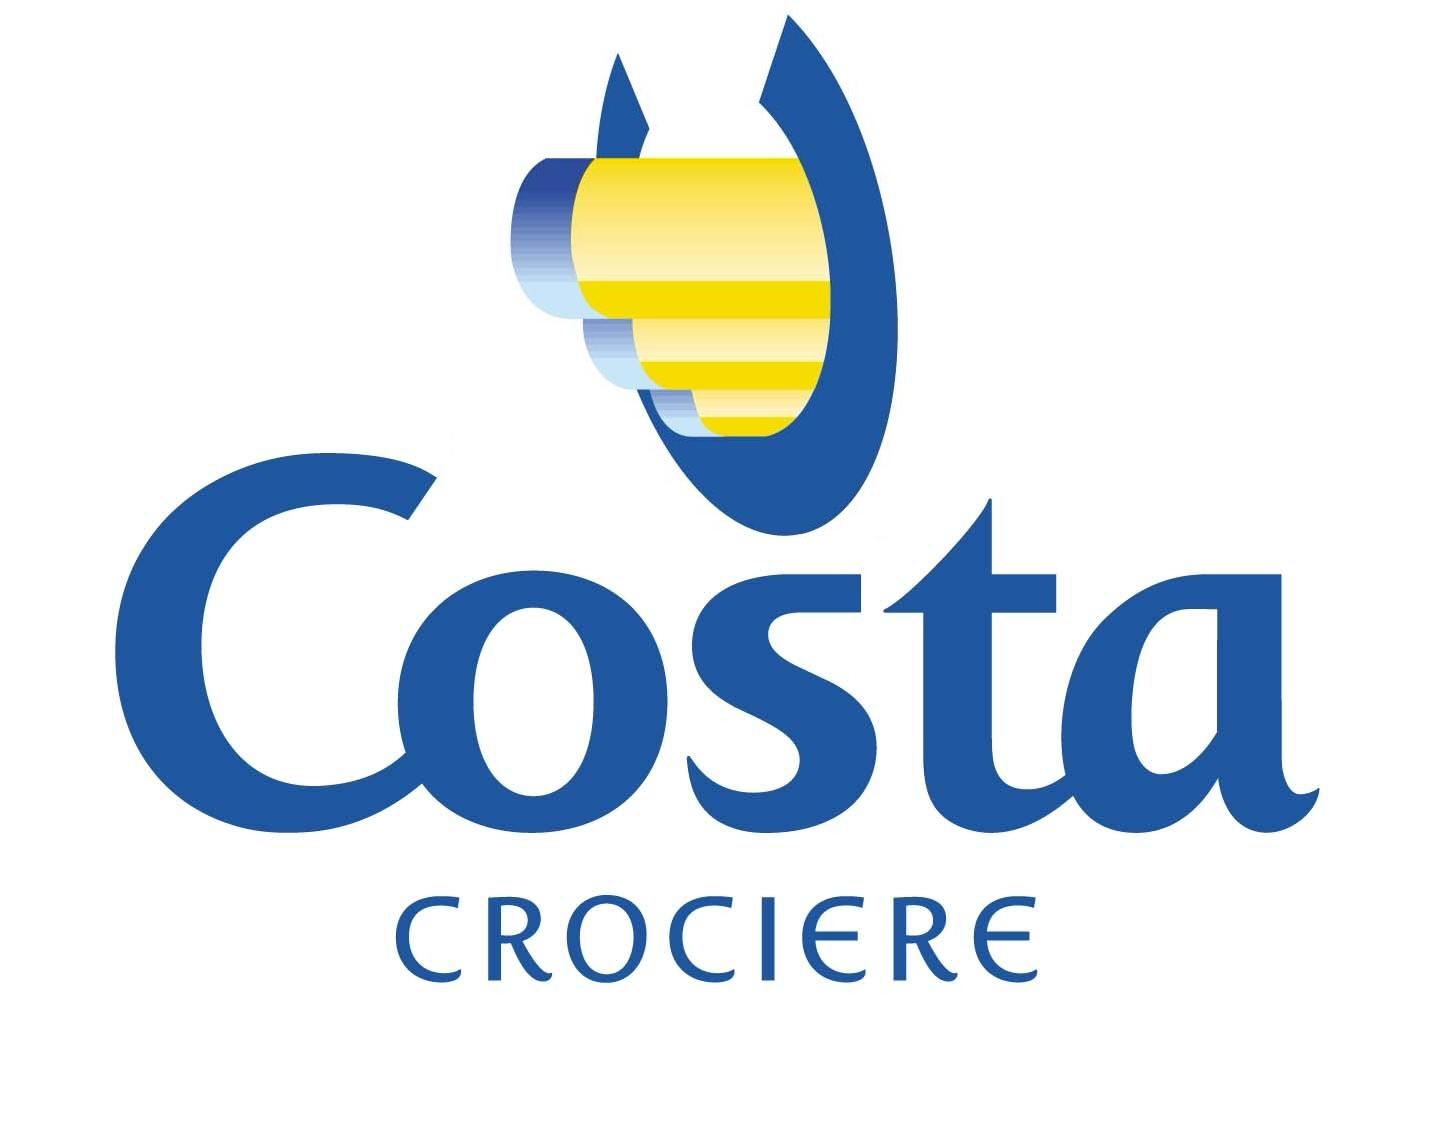 arch-tessile-costa-crociere-logo